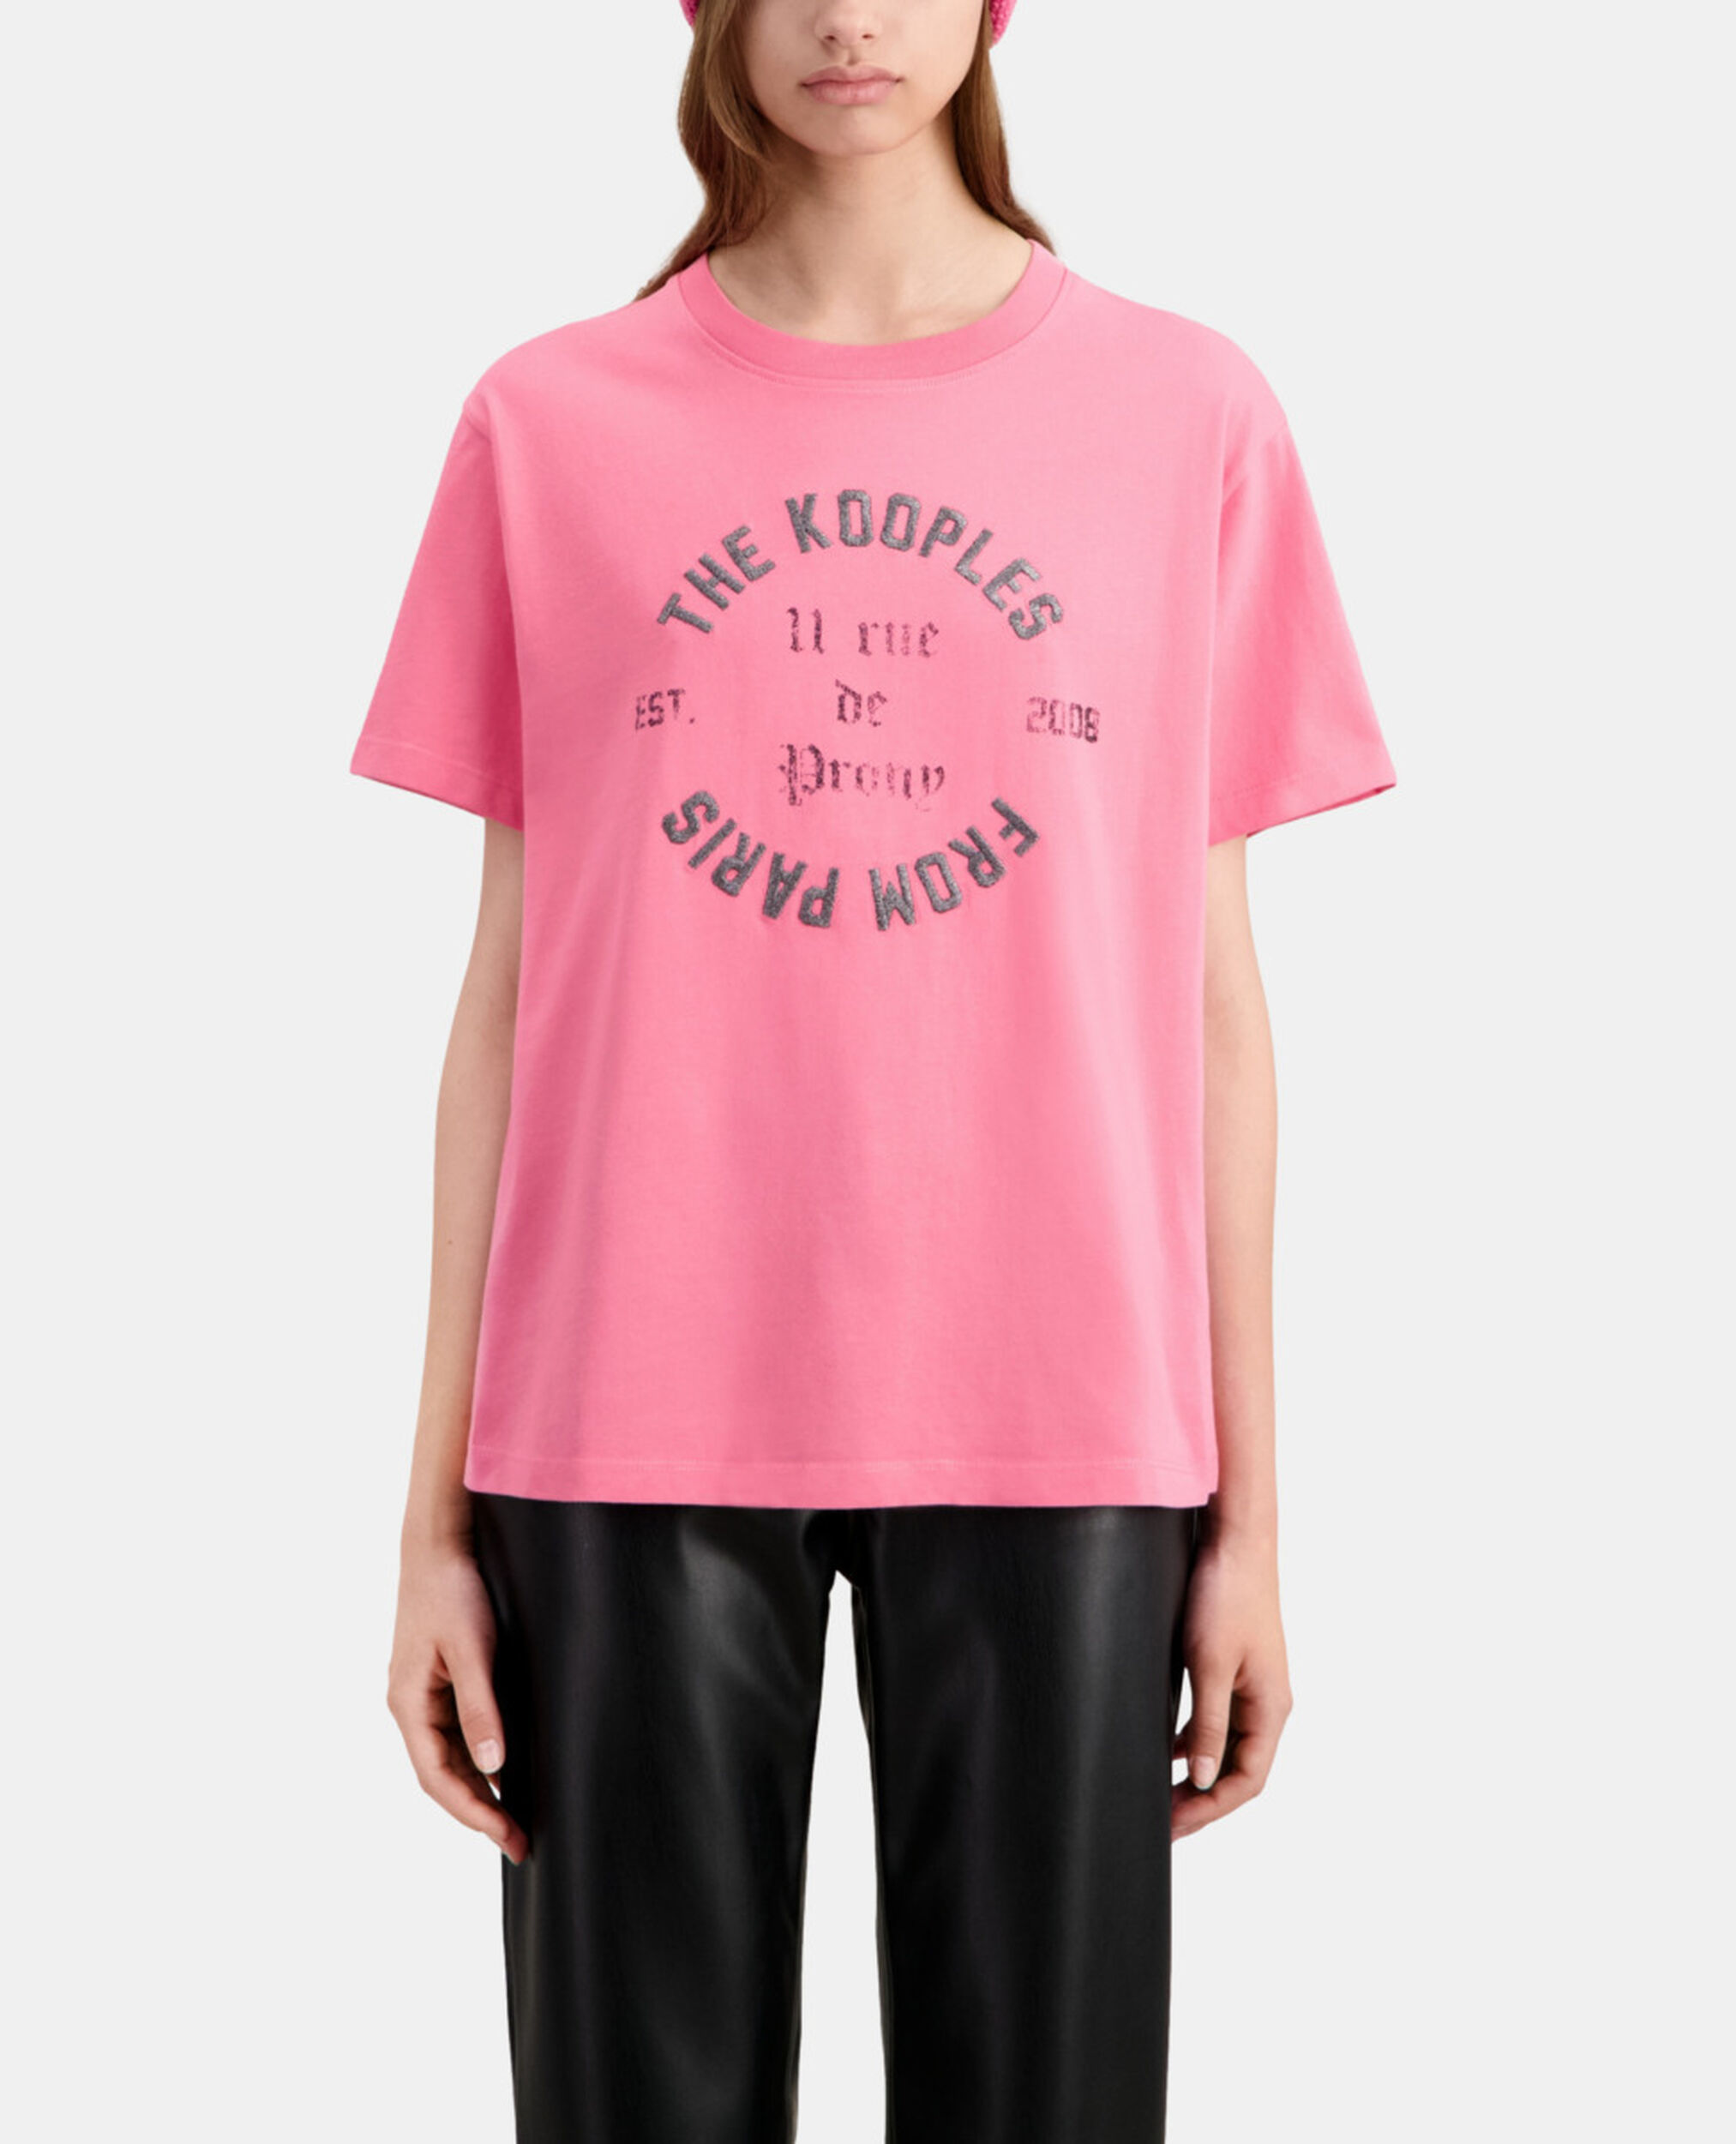 Rosa T-Shirt Damen mit Siebdruck, OLD PINK, hi-res image number null